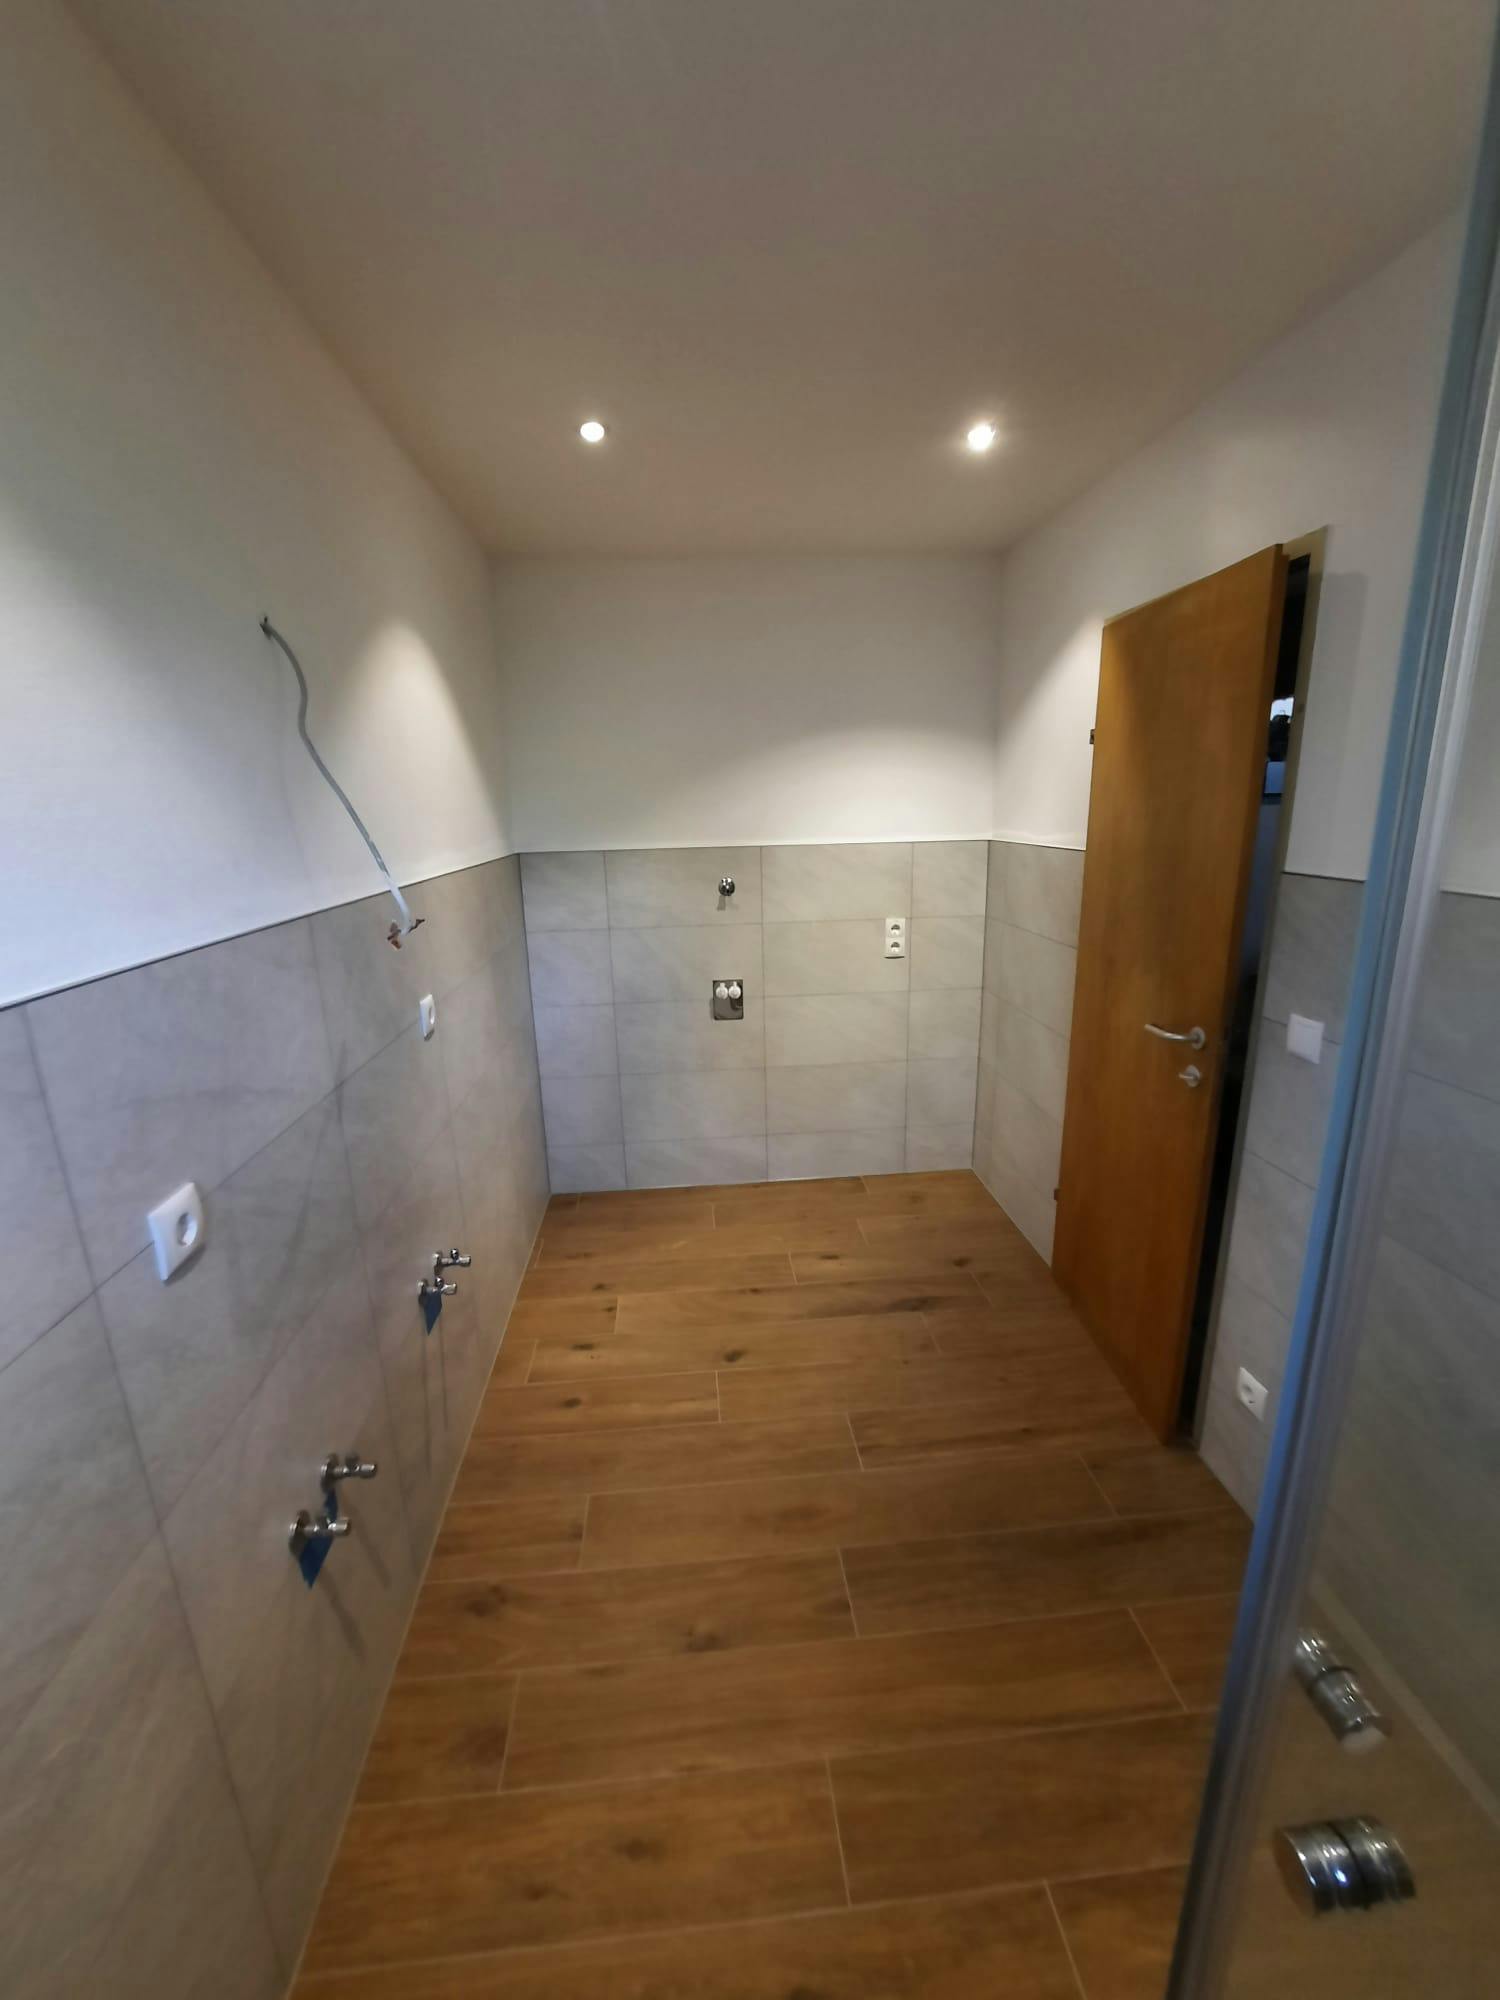 Modernes Badezimmer mit eleganter Duschkabine und hochwertigen Keramikfliesen